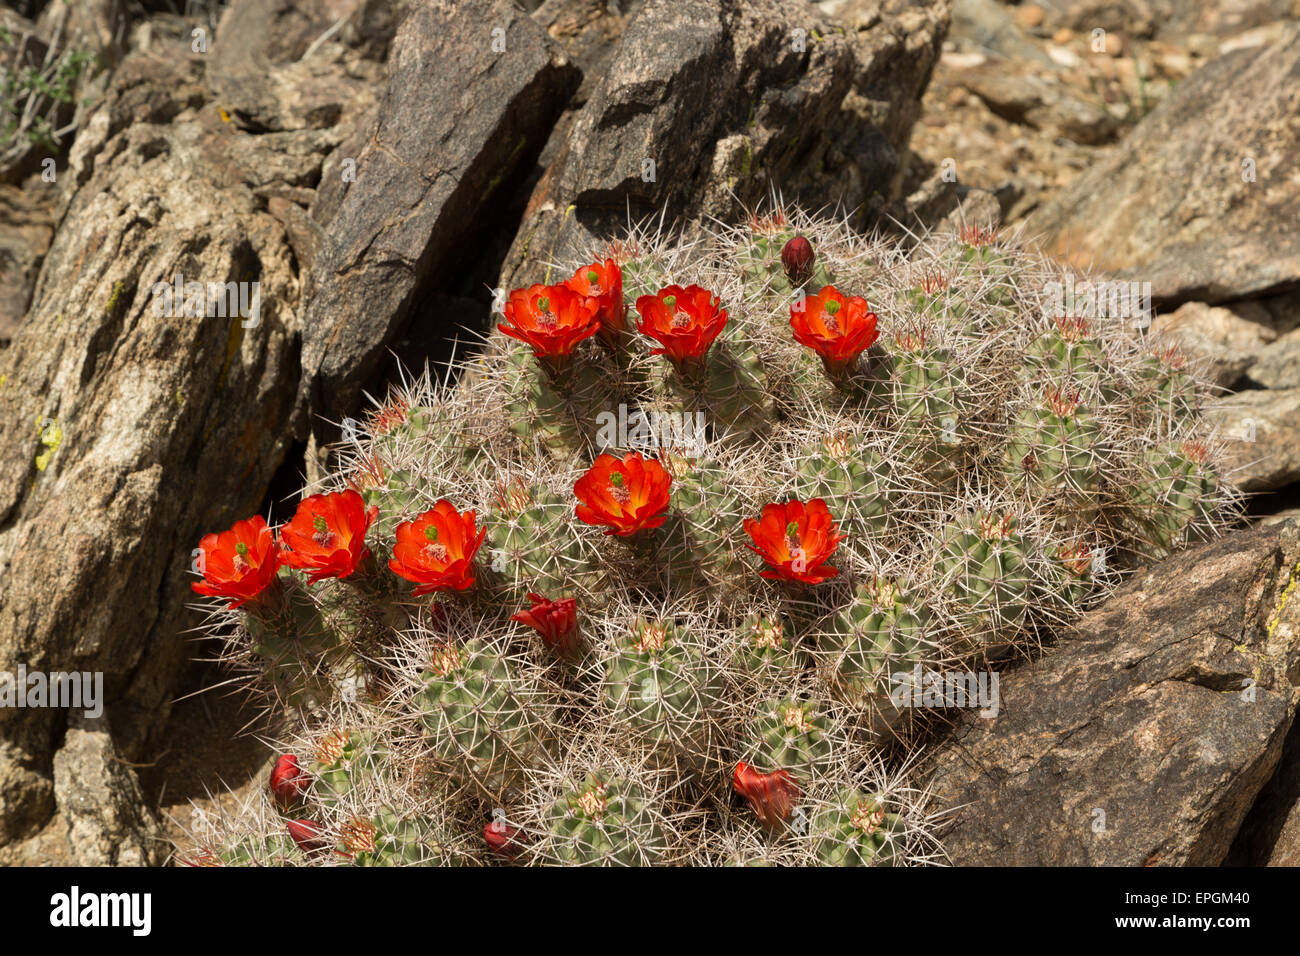 Una fotografia di un cactus in fiore con fiori di colore rosso nel Parco nazionale di Joshua Tree, in California, Stati Uniti d'America. Foto Stock